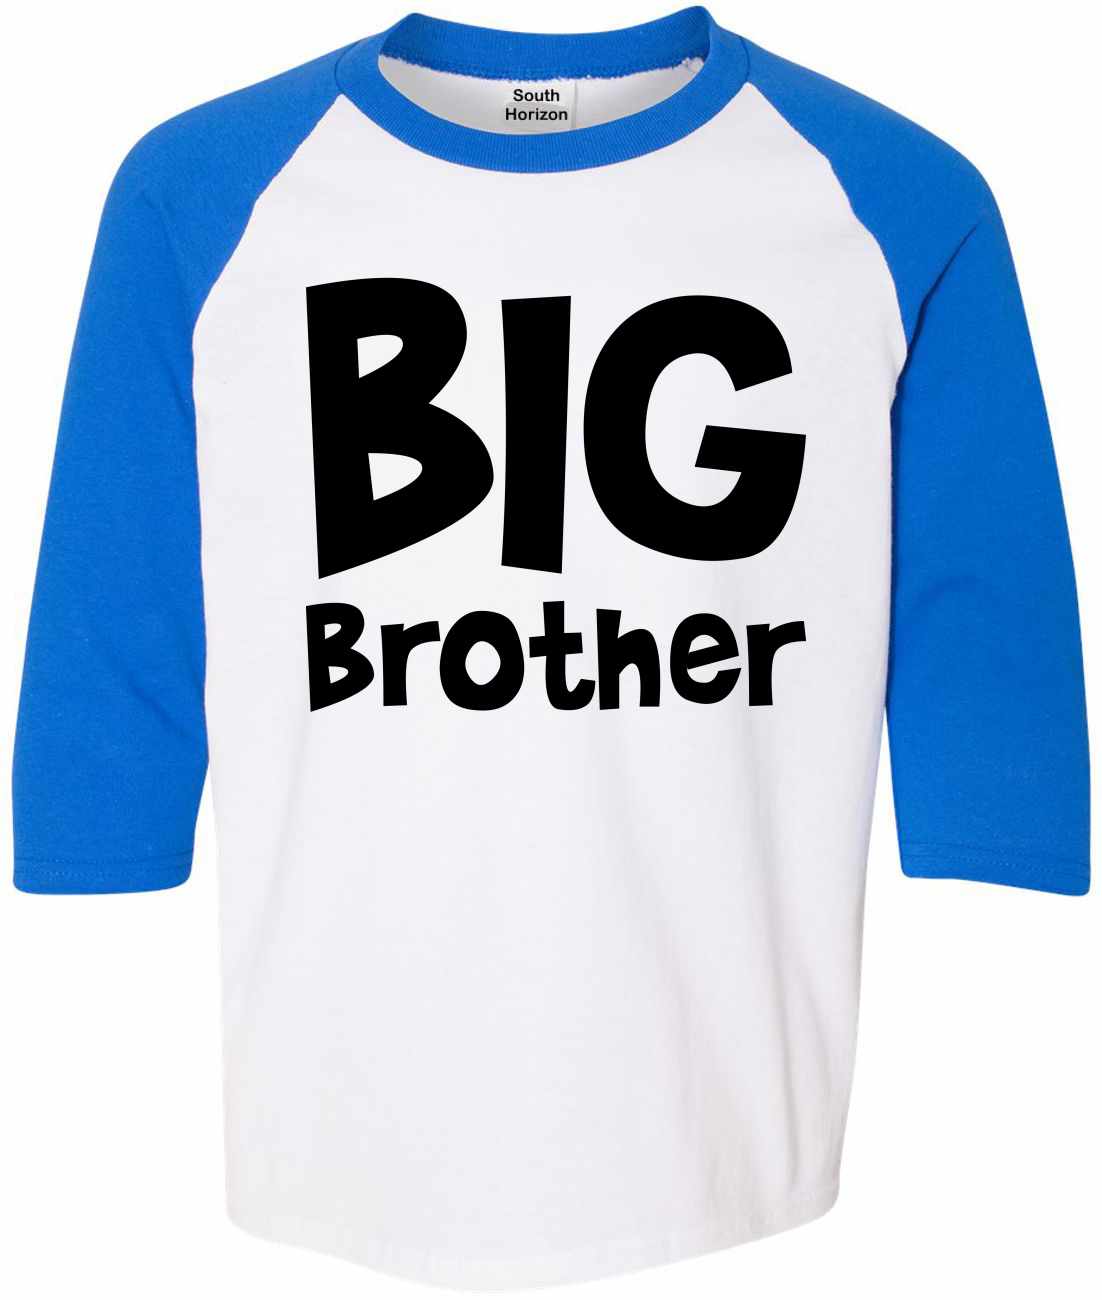 BIG BROTHER on Youth Baseball Shirt (#1157-212)